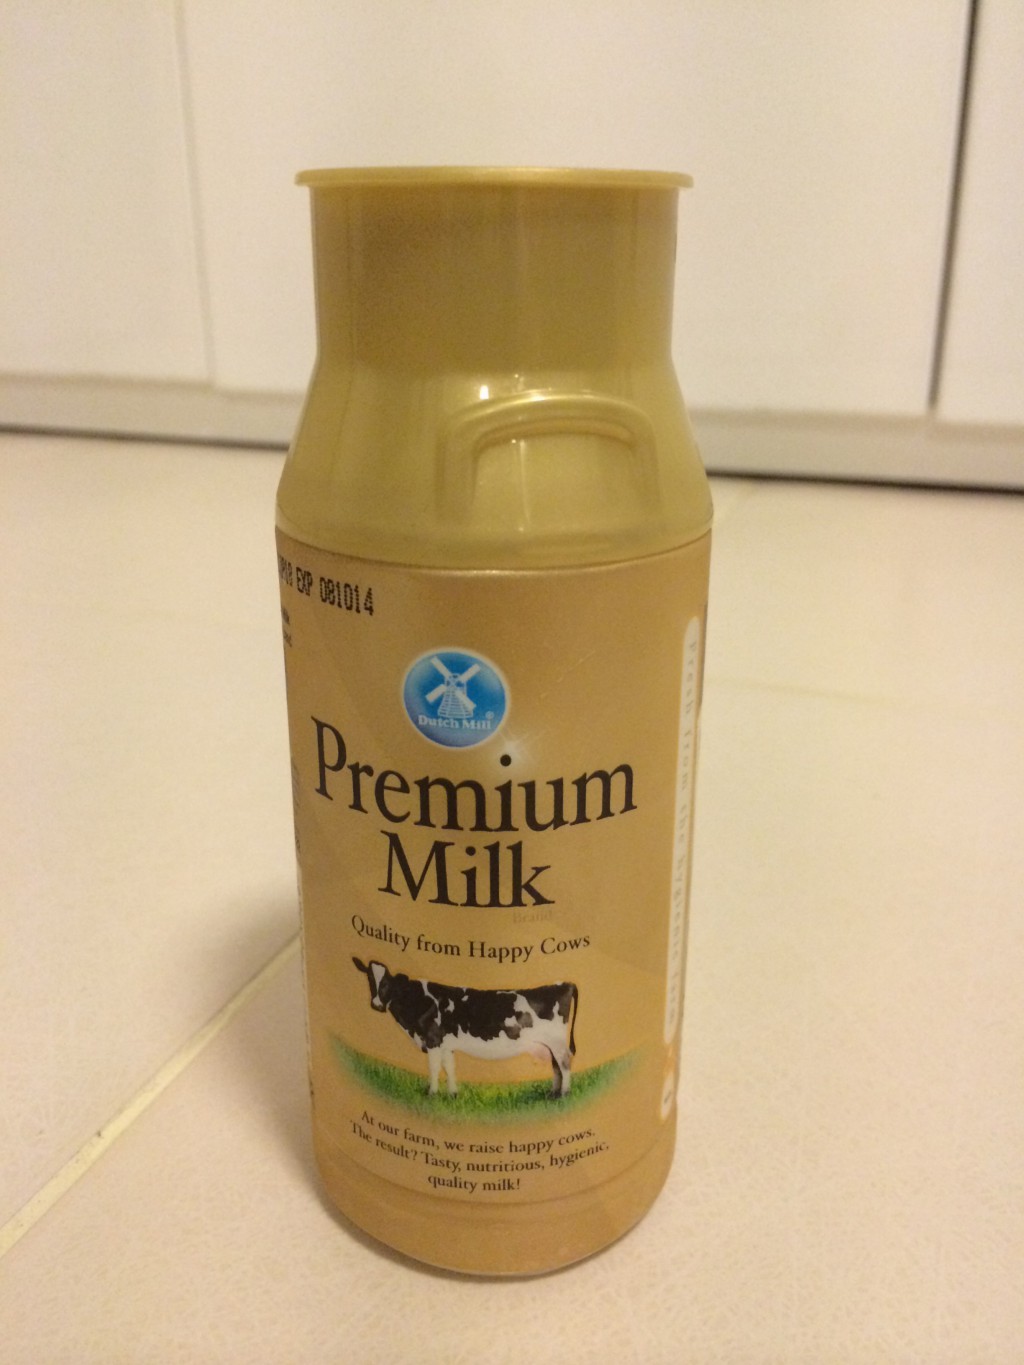 dutch-mill-premium-milk-bottle-front